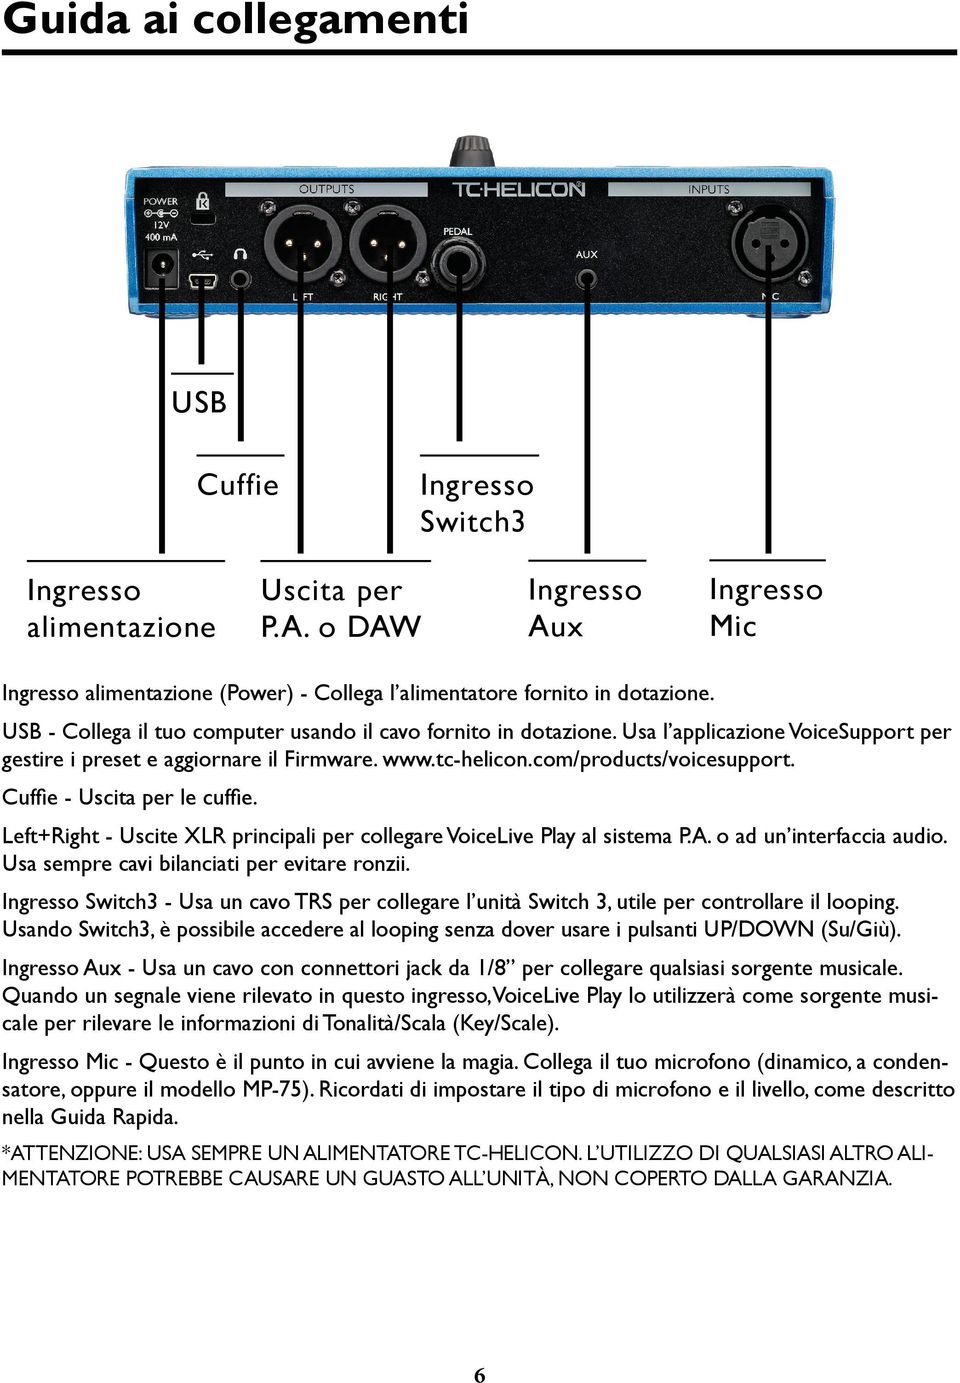 Cuffie - Uscita per le cuffie. Left+Right - Uscite XLR principali per collegare VoiceLive Play al sistema P.A. o ad un interfaccia audio. Usa sempre cavi bilanciati per evitare ronzii.